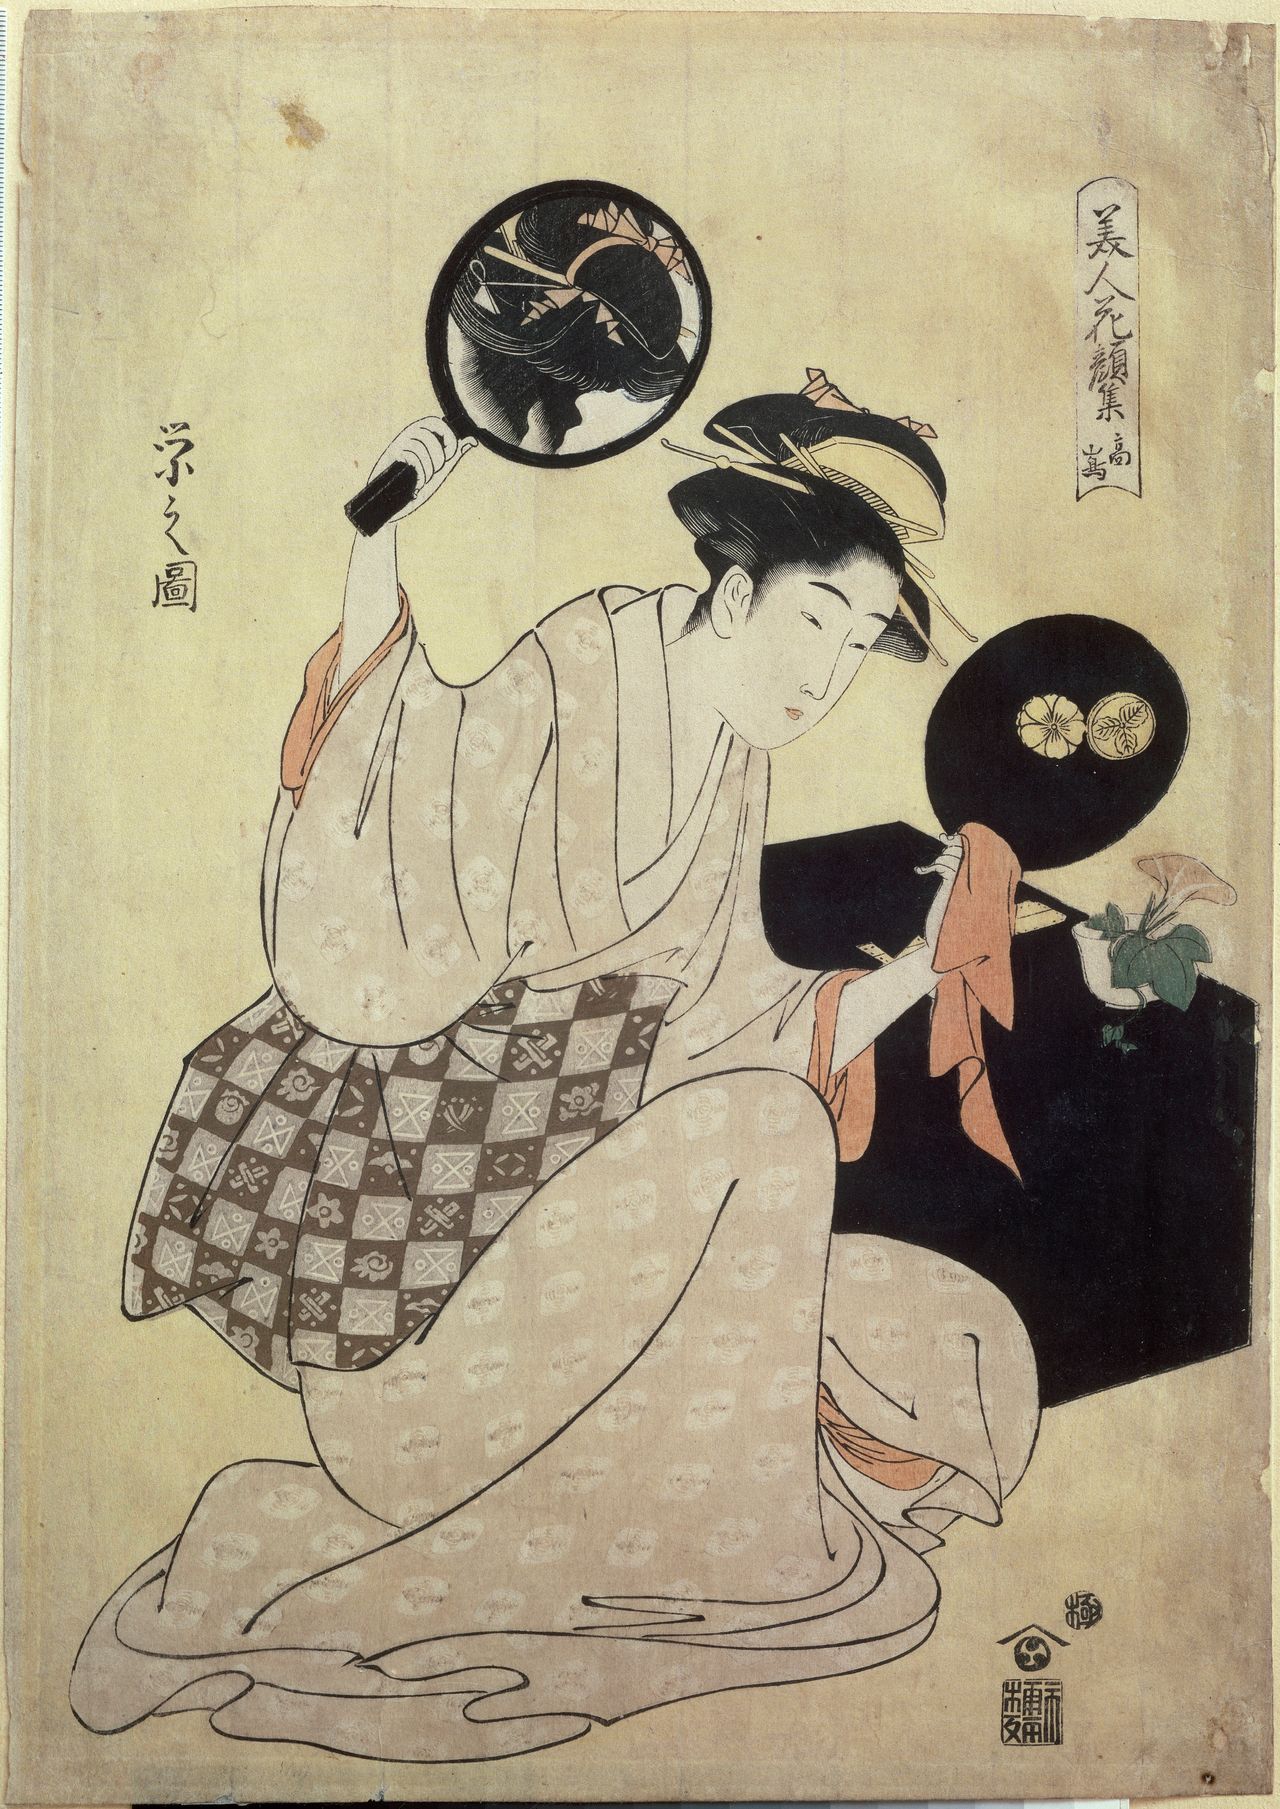 Chobunsai (ou Hosoda) Eishi, "Young woman fixing her hair in a mirror," 1795-1796